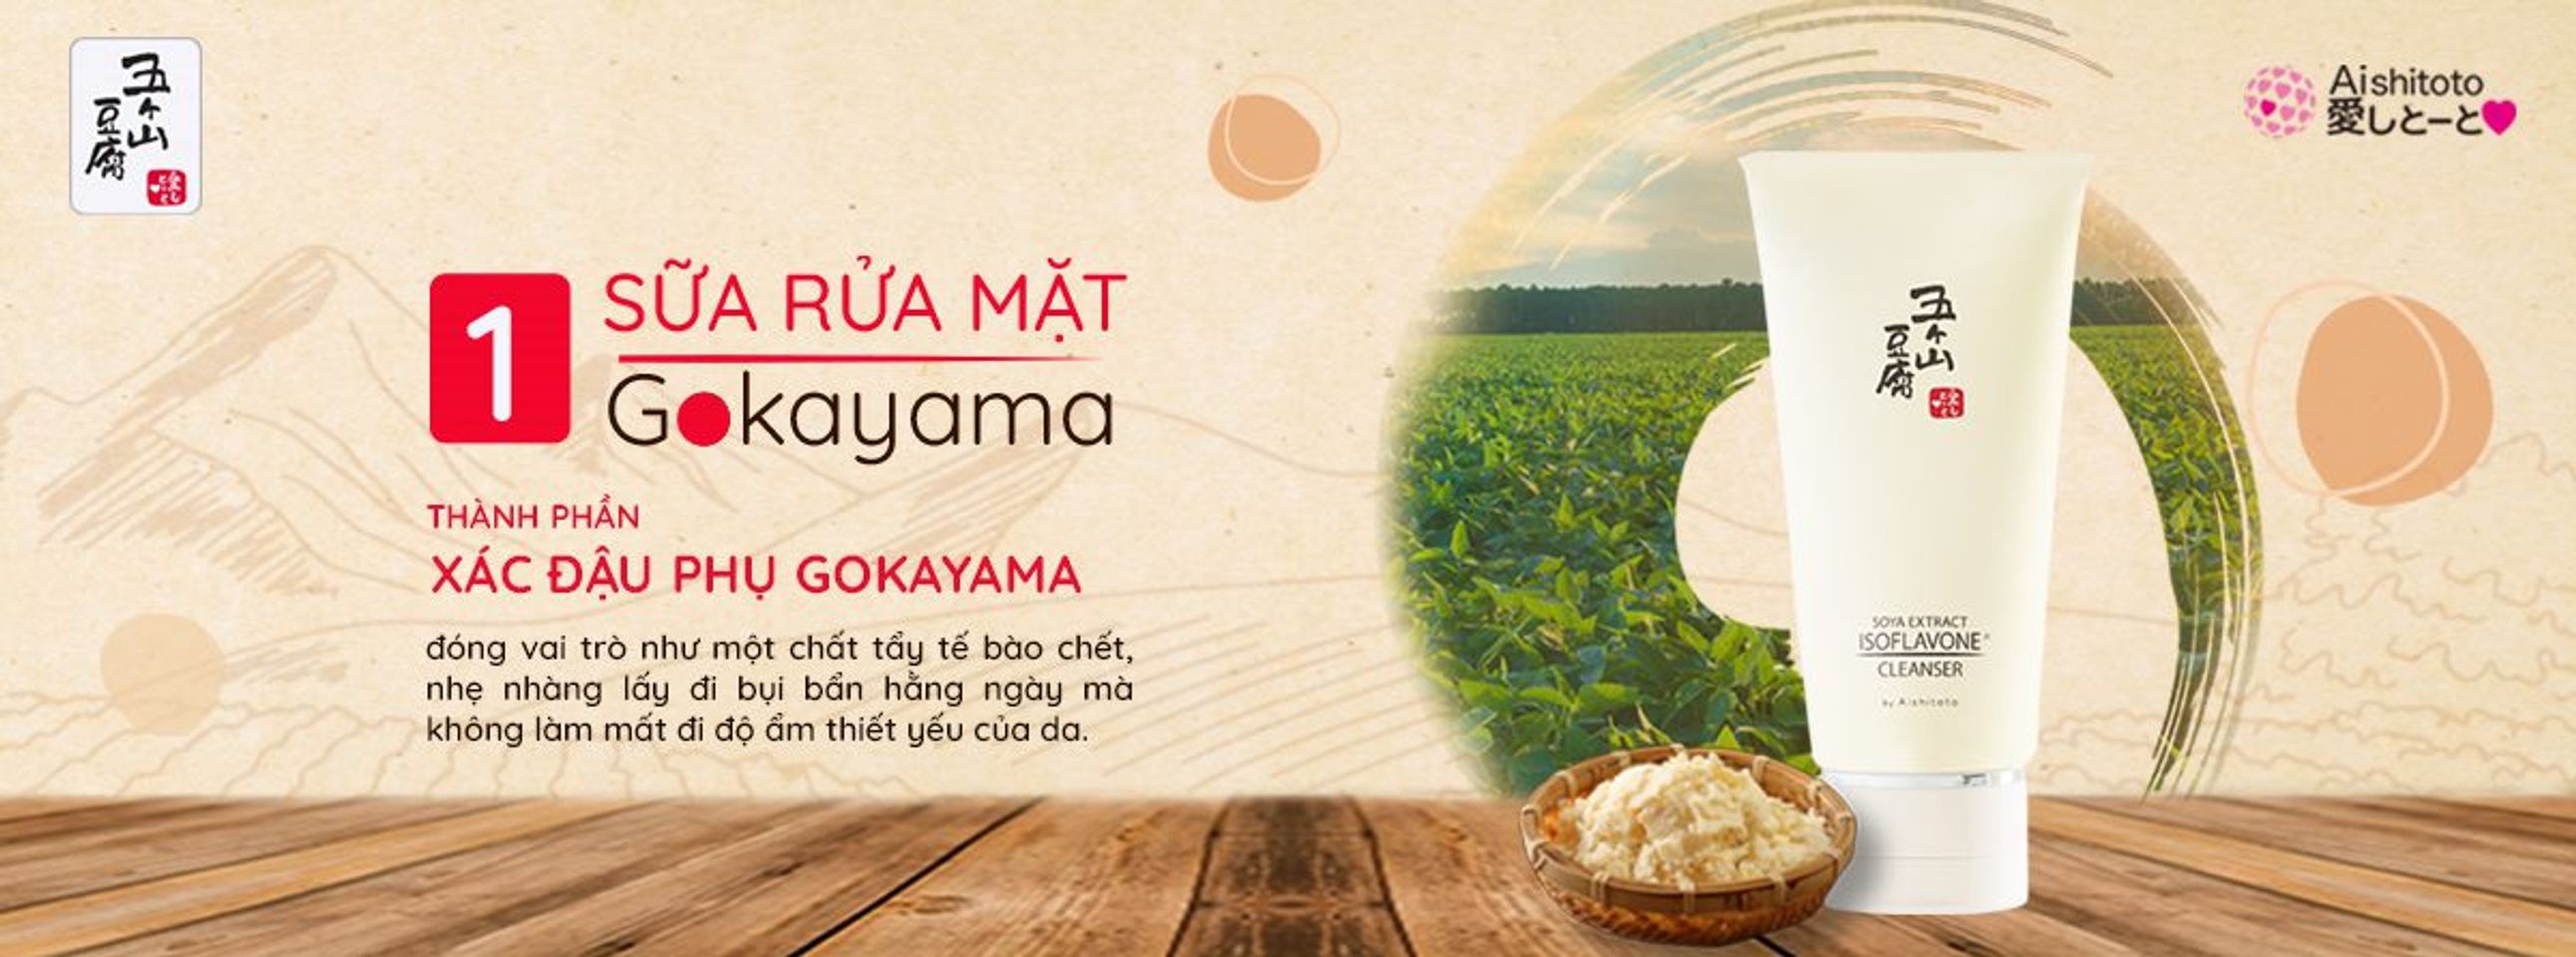 Sữa Rửa Mặt Đậu Nành Gokayama Soya Extract Cleanser 3